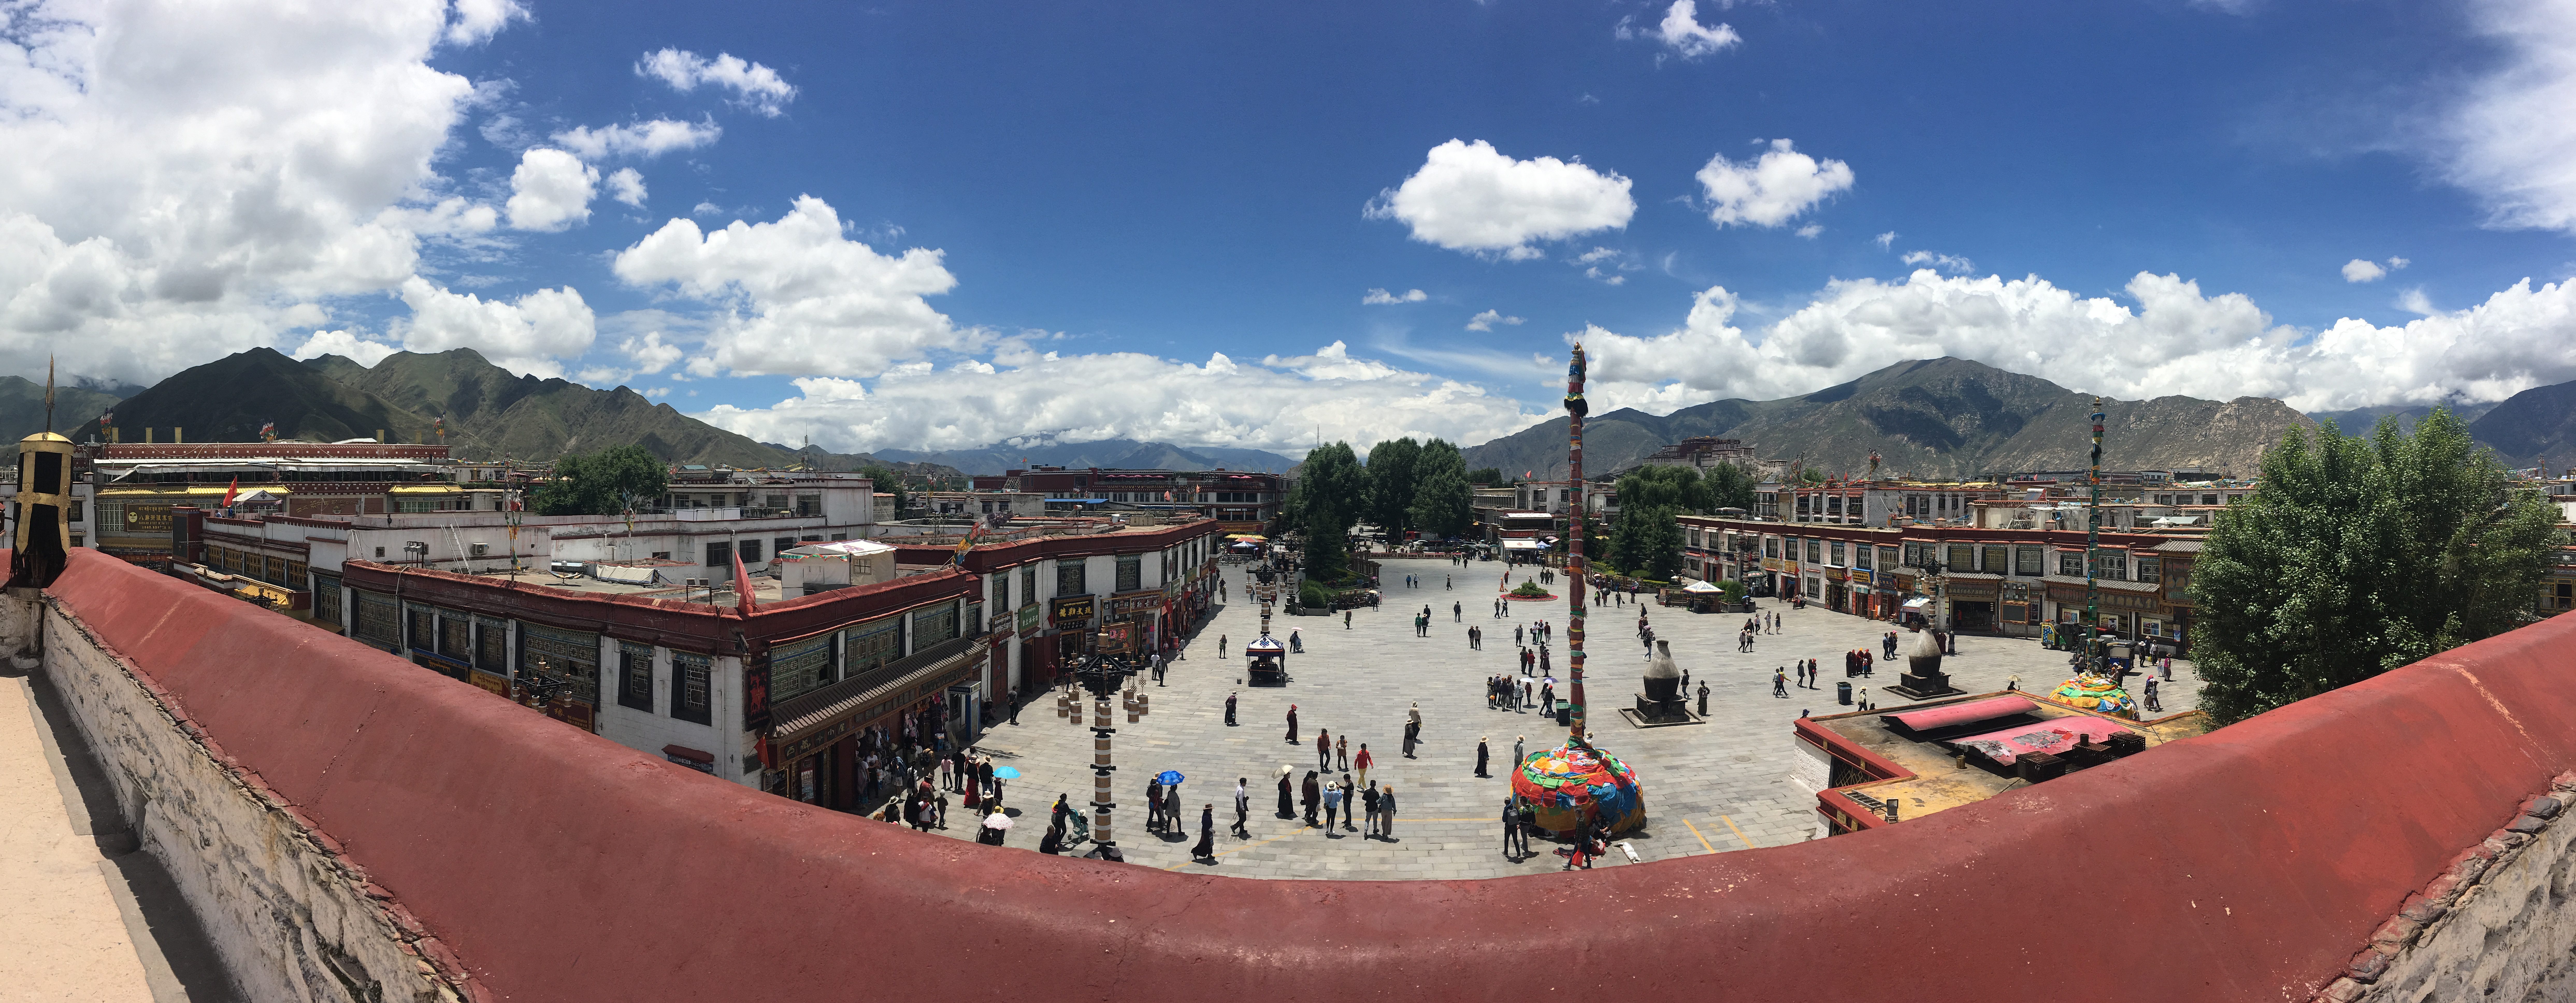 Буддийский храм Джоканг, Лхаса, Тибет